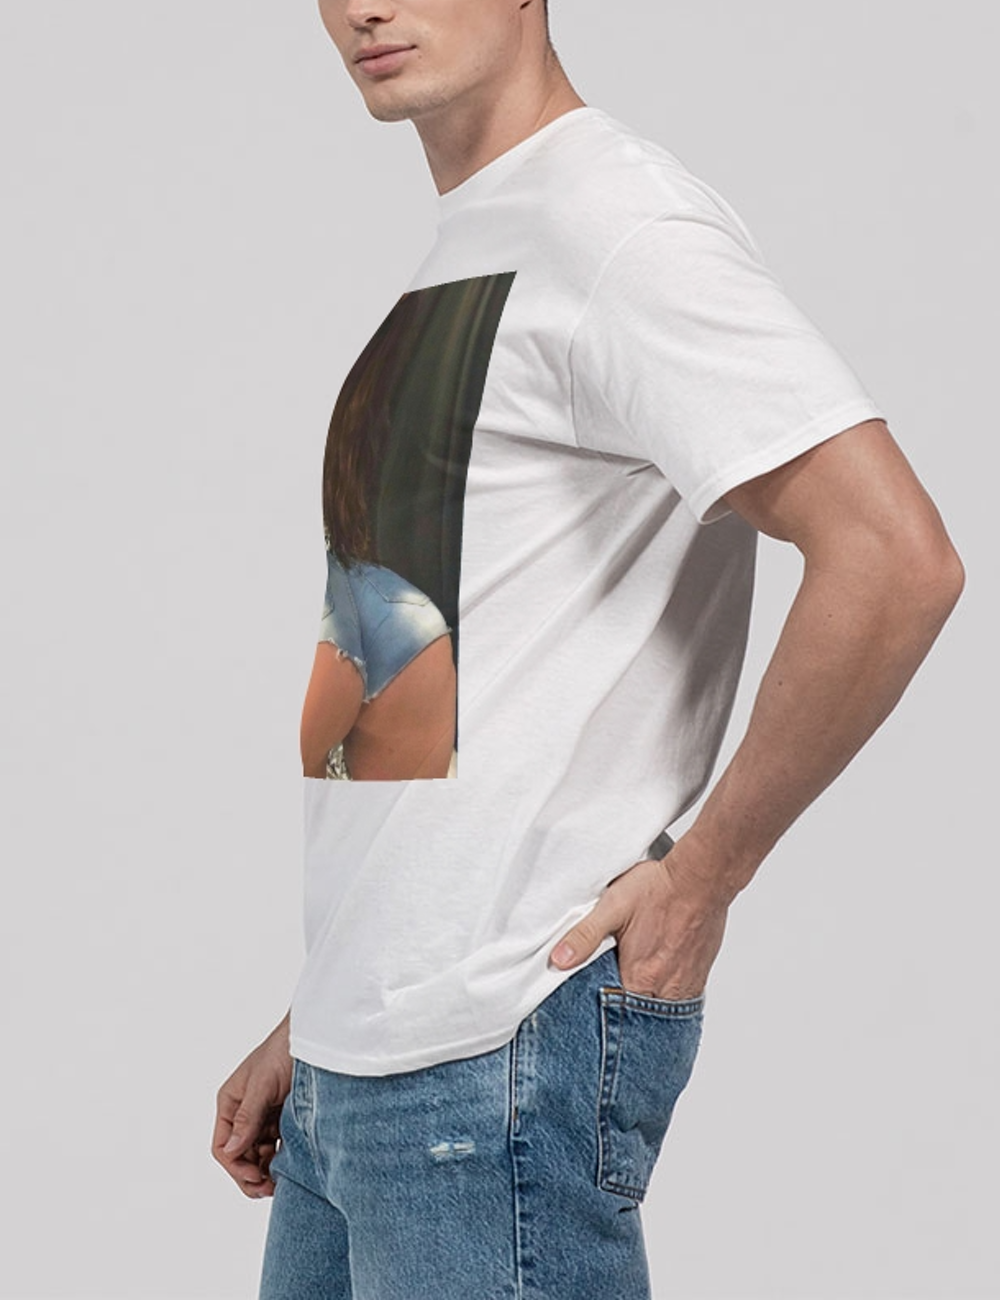 Nasty Gal Hot Babe Graphic Print Men's Classic T-Shirt OniTakai